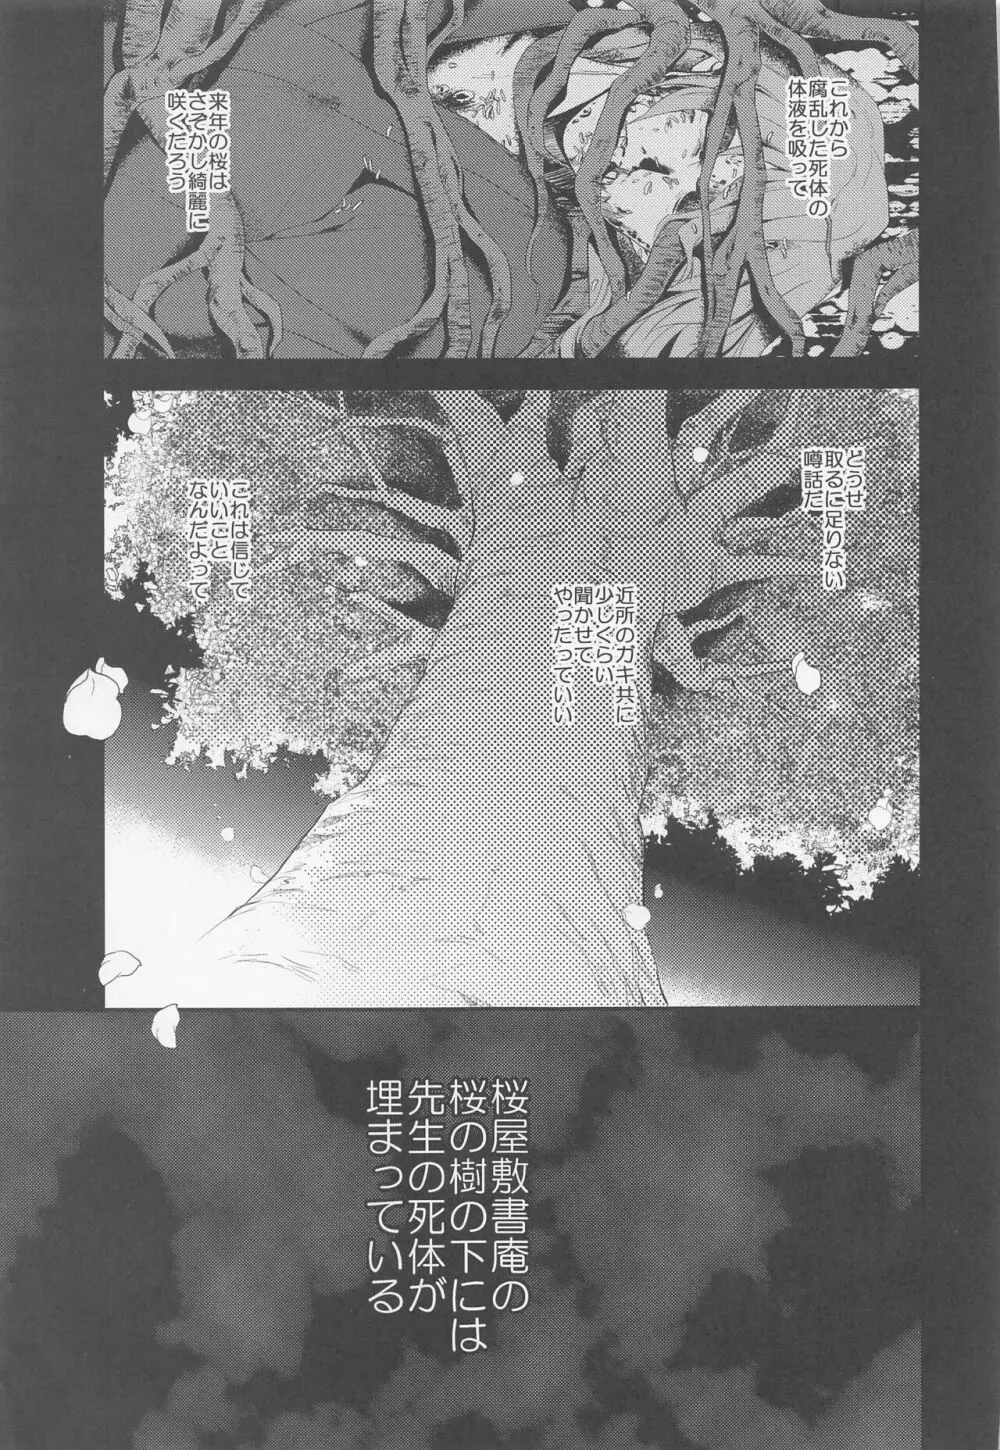 桜屋敷書庵の桜の樹の下には死体が埋まっている - page44